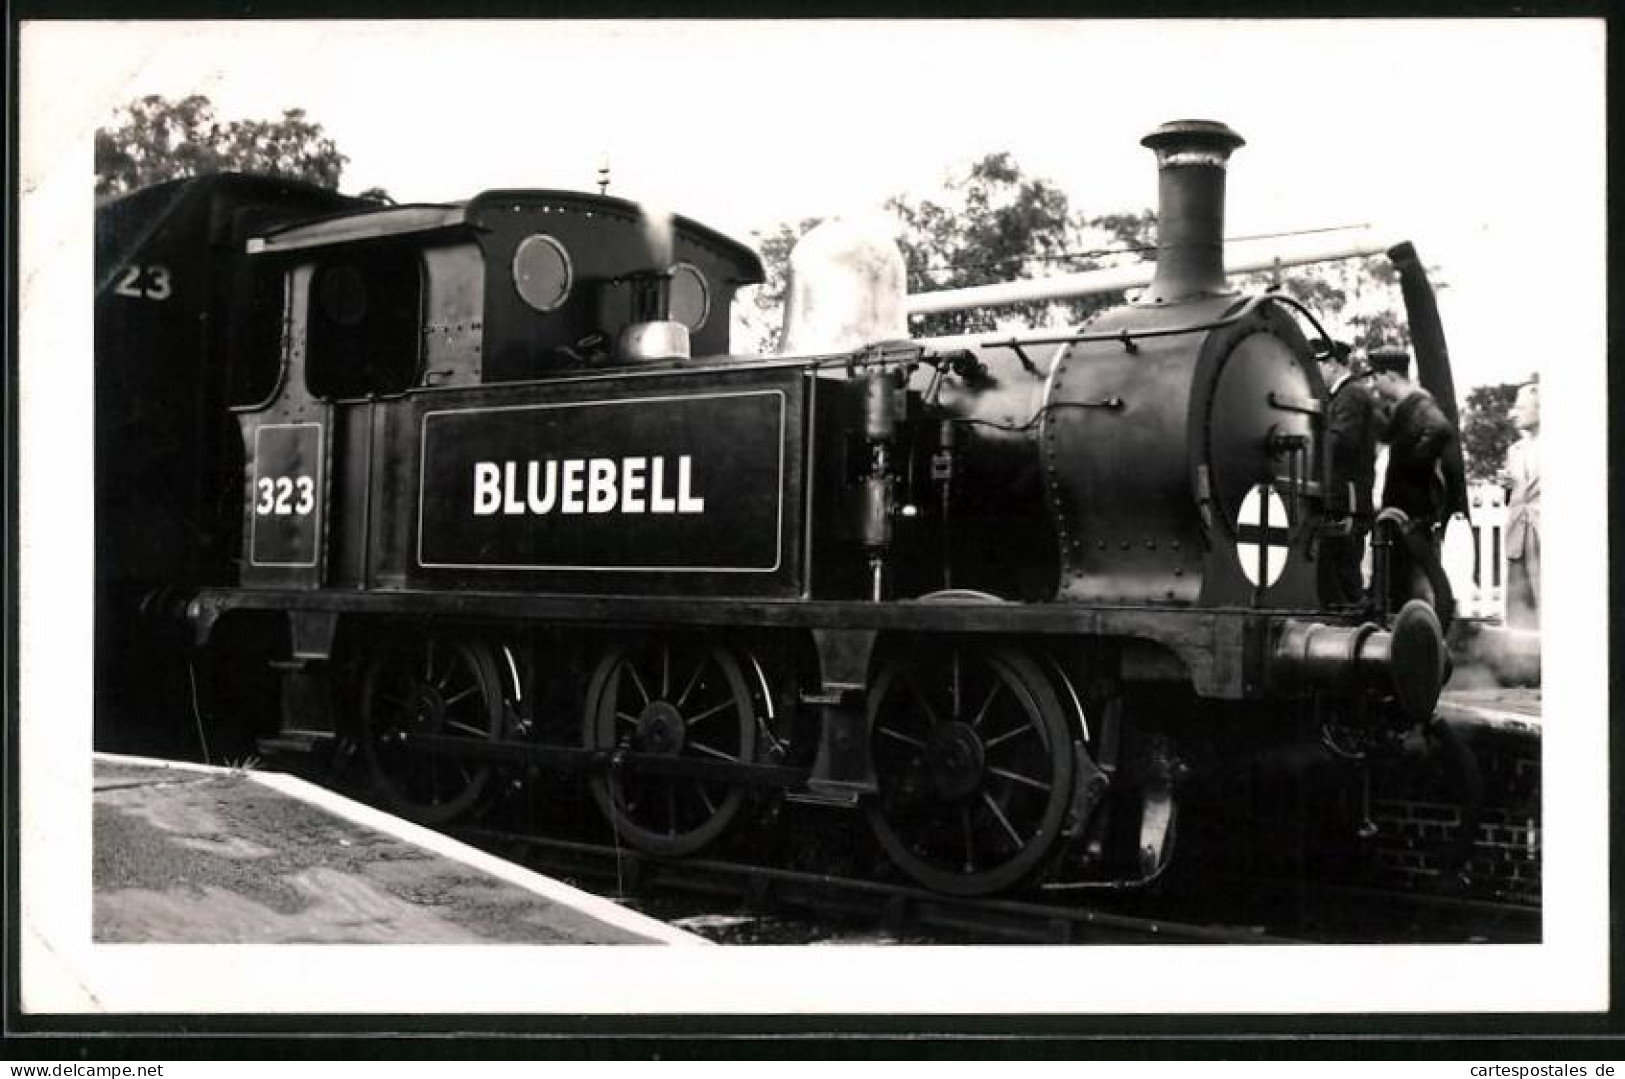 Fotografie Britische Eisenbahn, Dampflok, Lokomotive Bluebell Nr. 323  - Trains